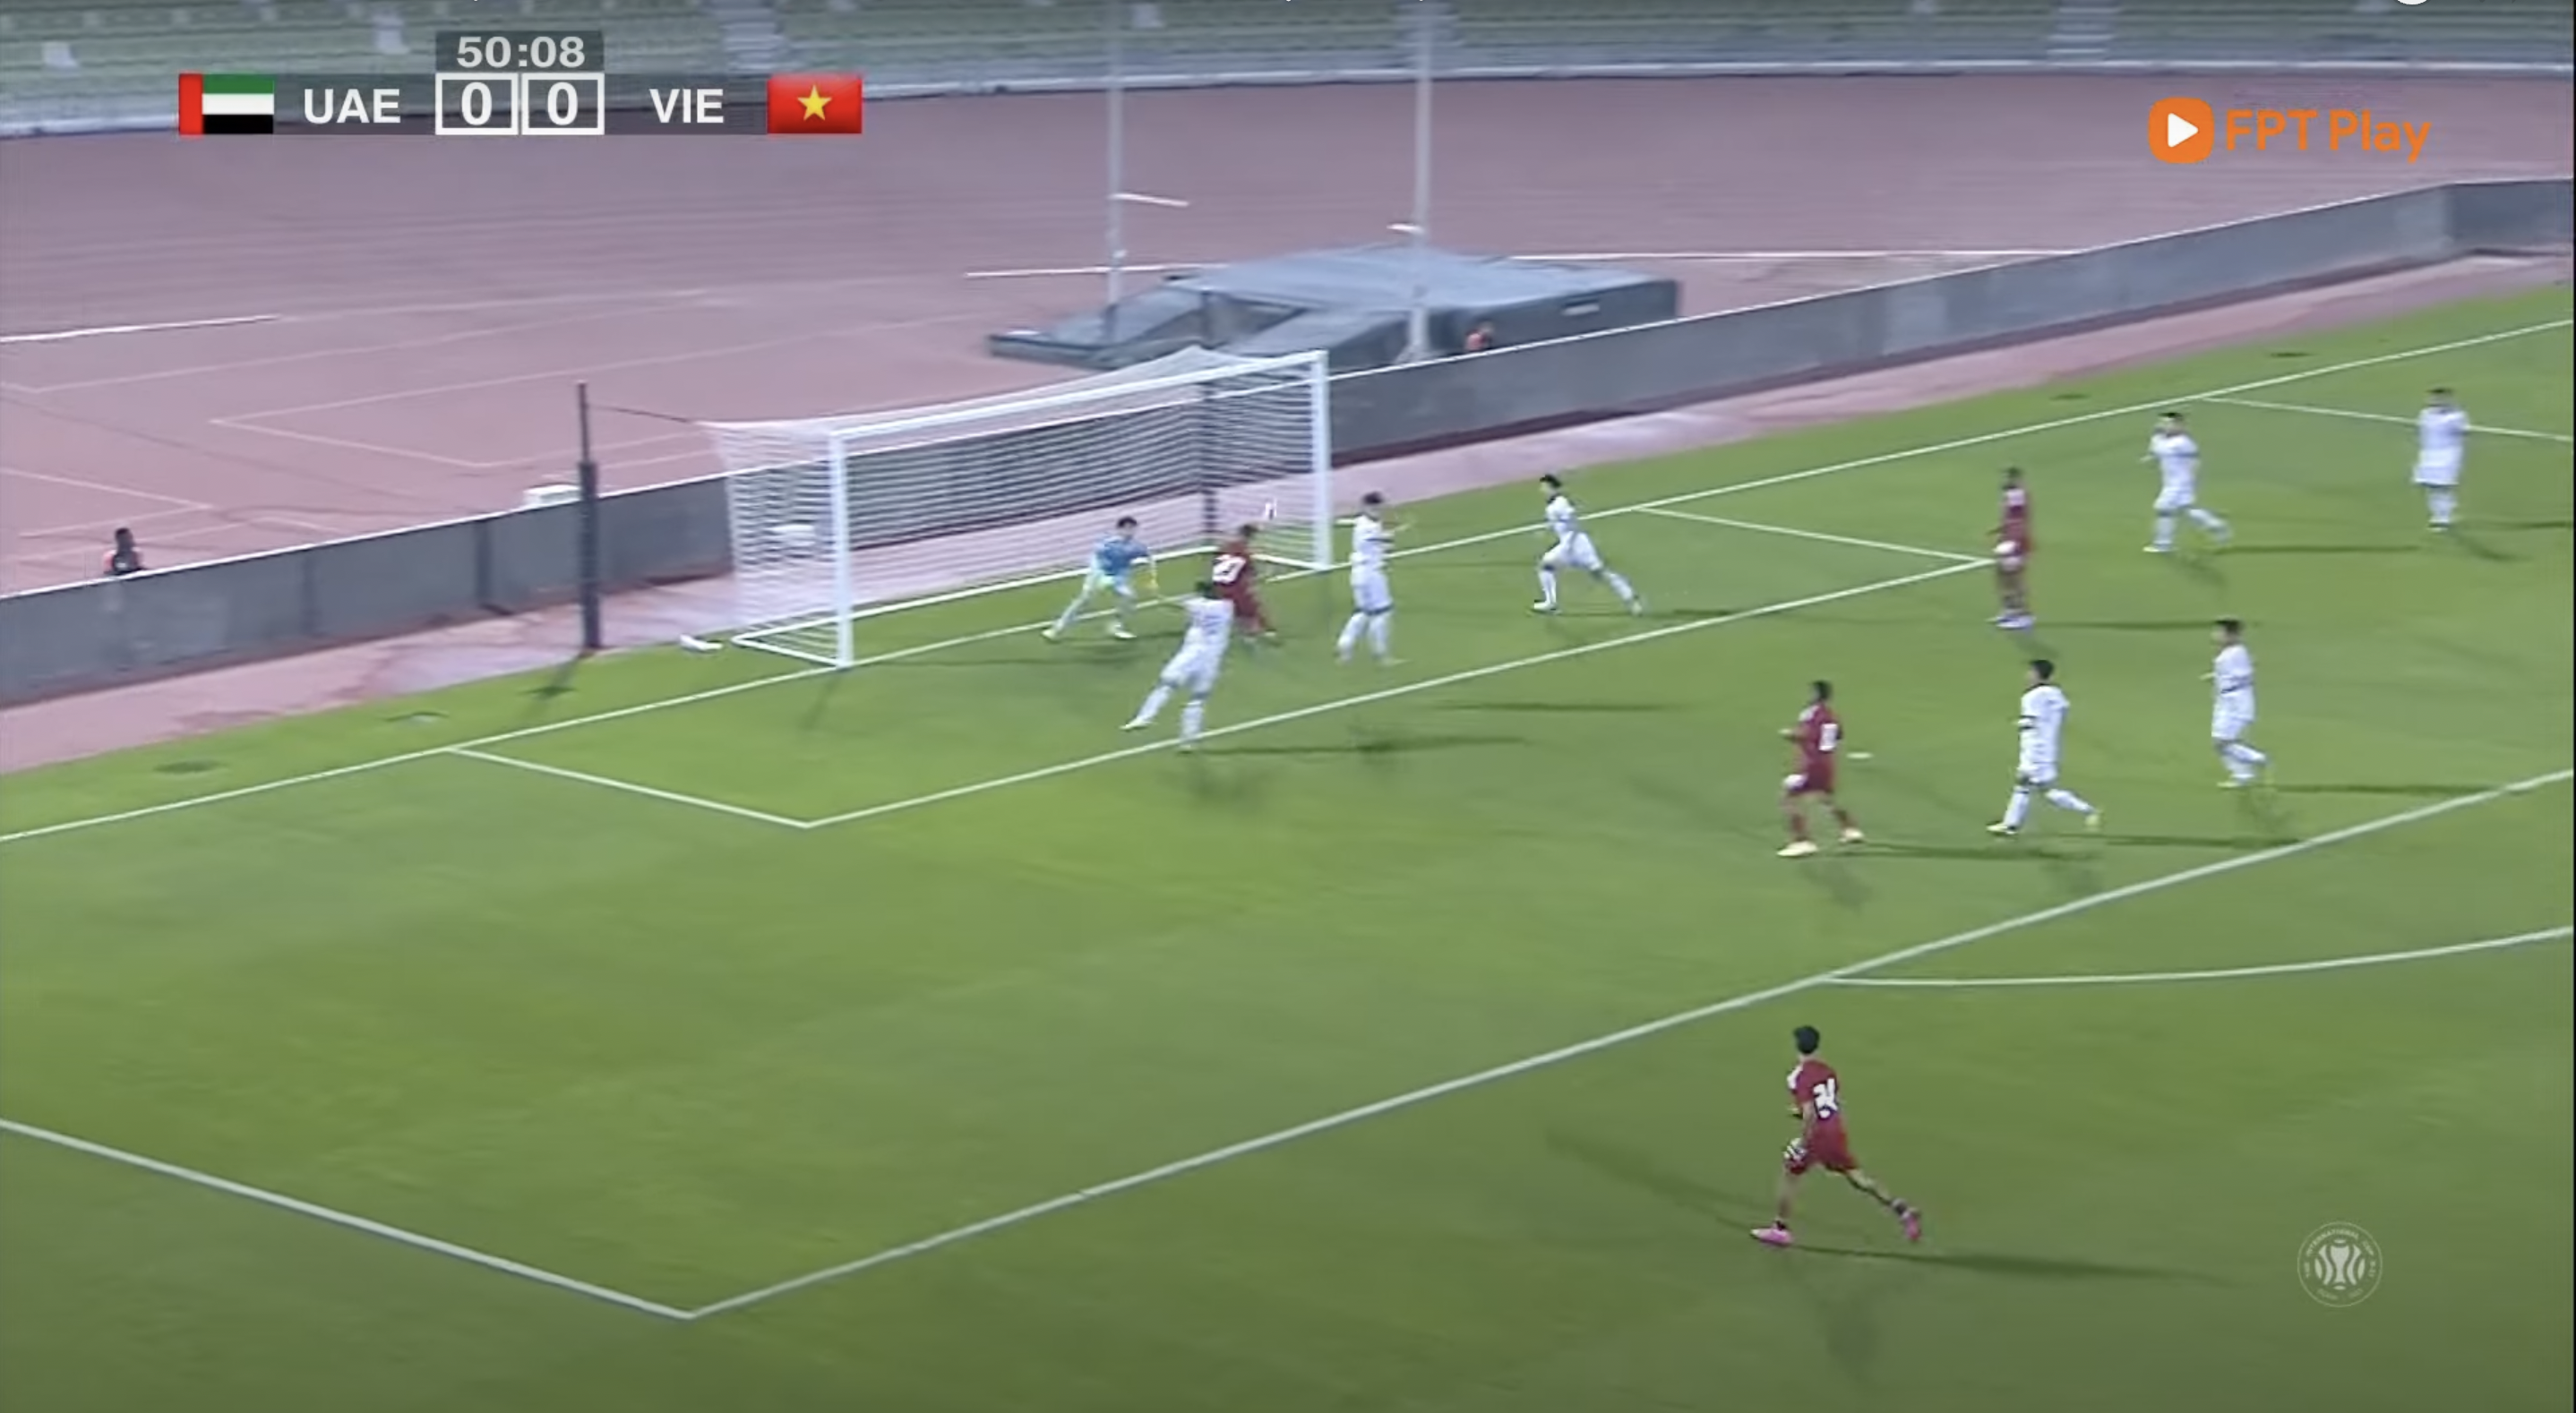 Chiều cao khiêm tốn của hàng hậu vệ khiến U23 Việt Nam thua bàn đầu tiên